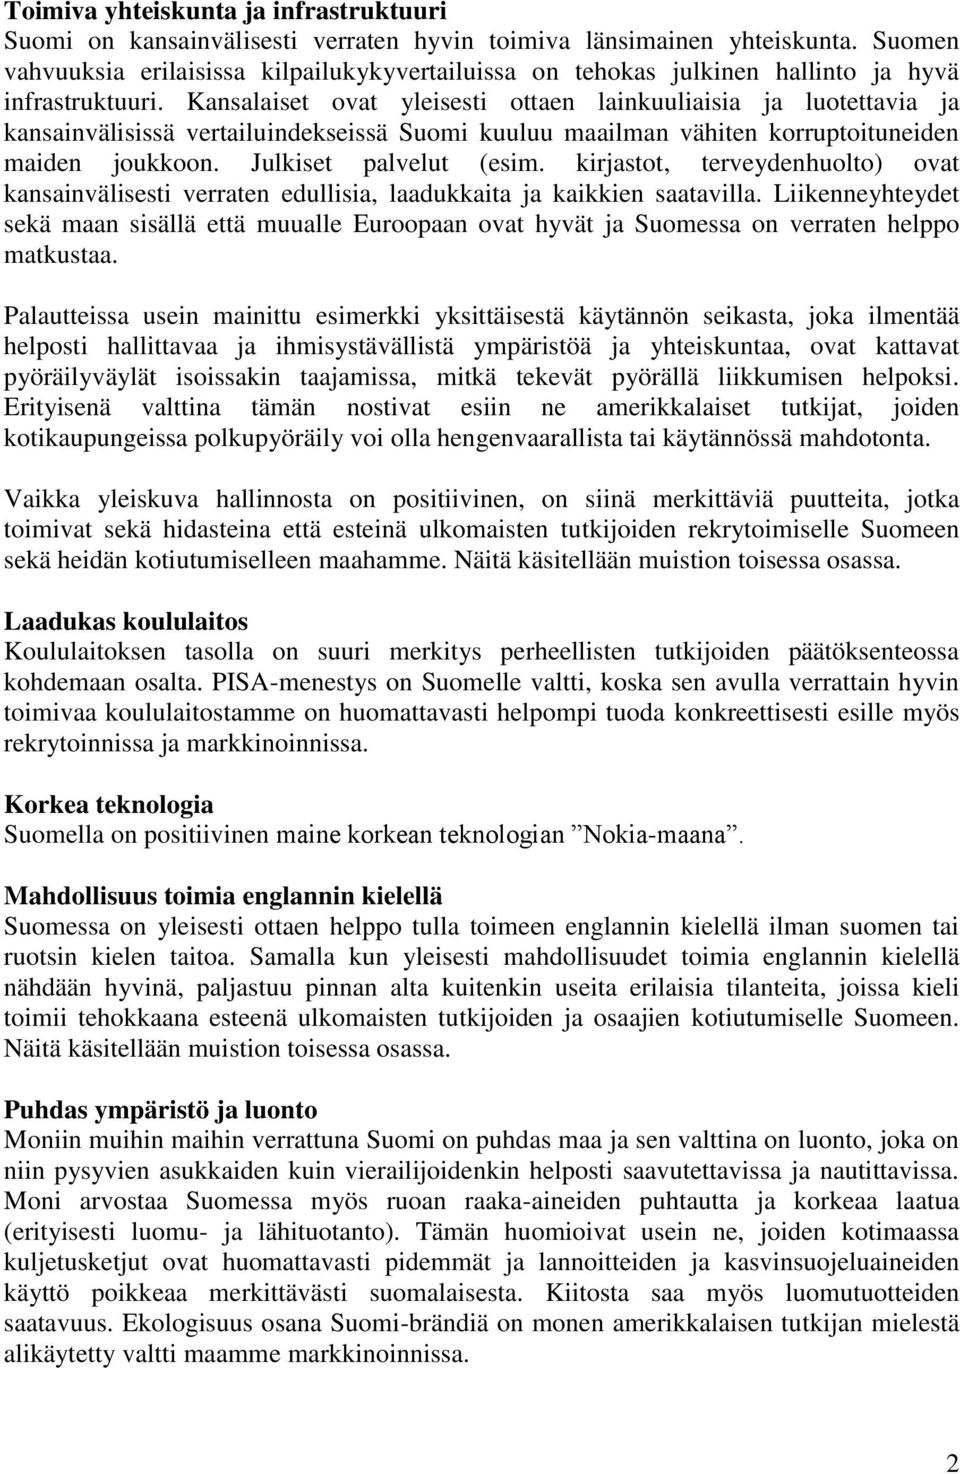 Kansalaiset ovat yleisesti ottaen lainkuuliaisia ja luotettavia ja kansainvälisissä vertailuindekseissä Suomi kuuluu maailman vähiten korruptoituneiden maiden joukkoon. Julkiset palvelut (esim.